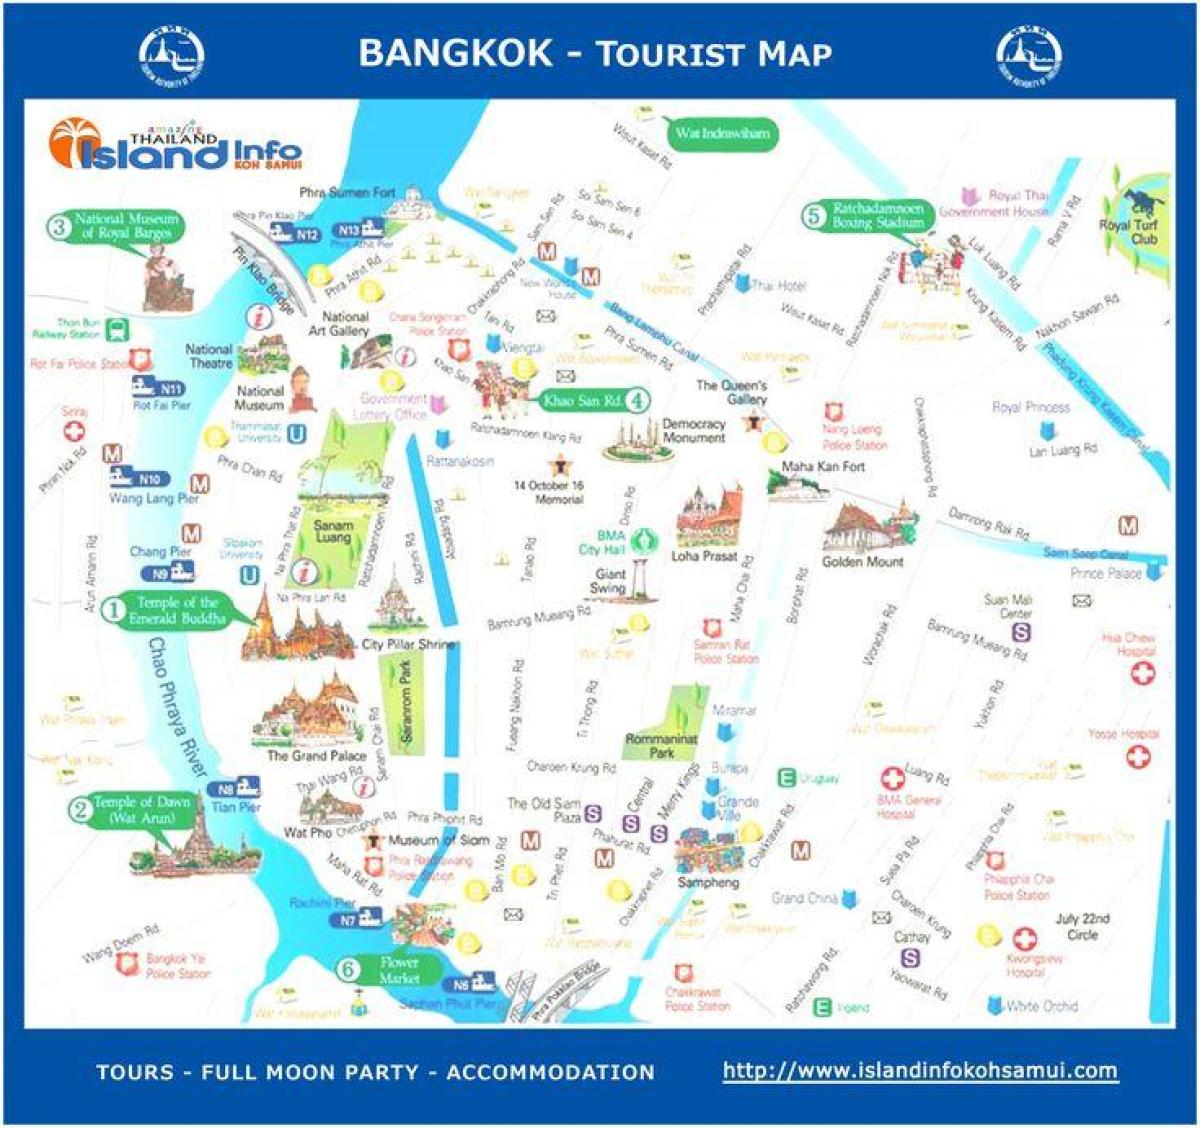 태국 방콕 관광지도